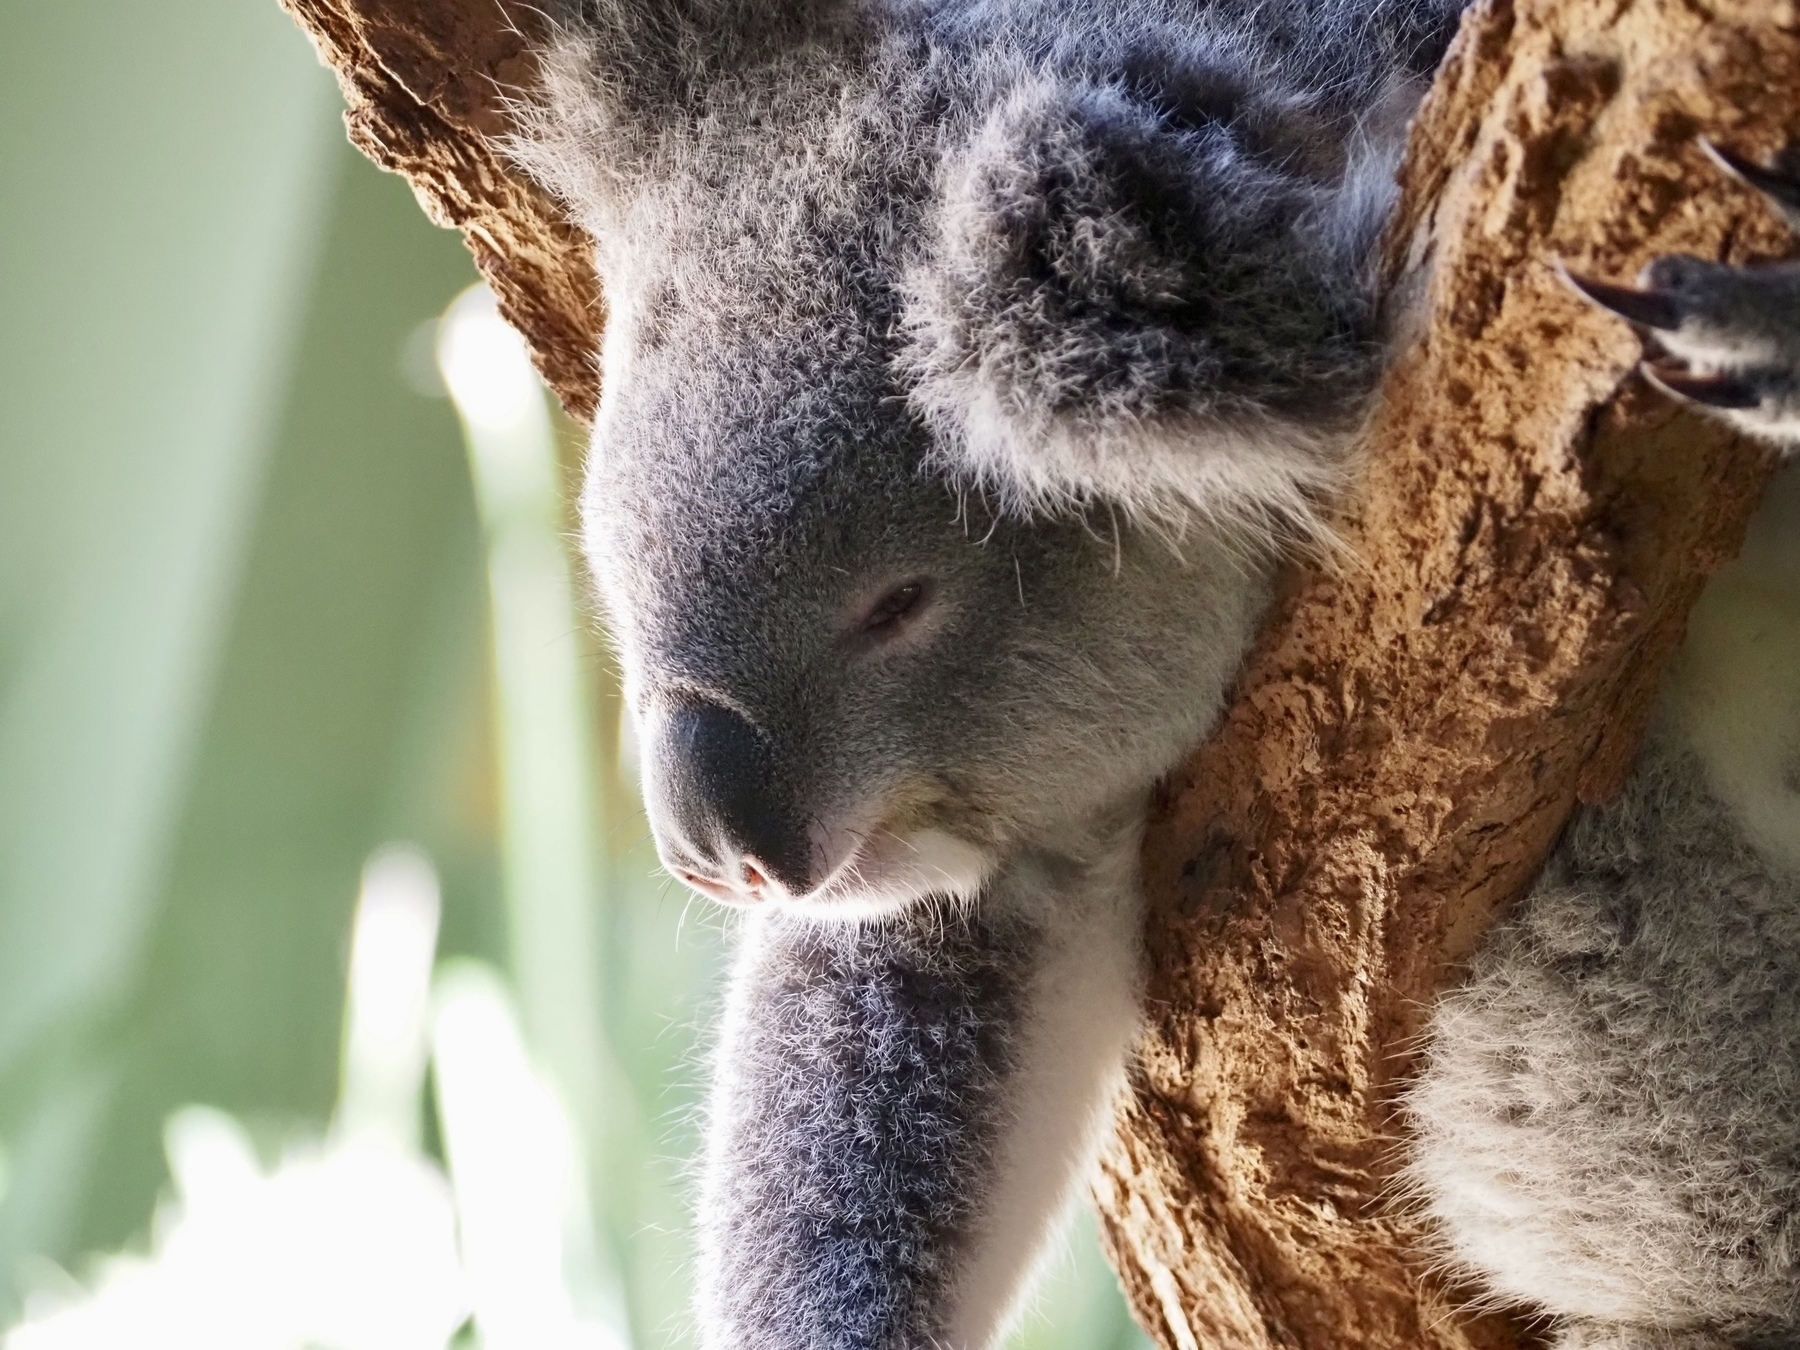 A koala leans lazily on a branch.